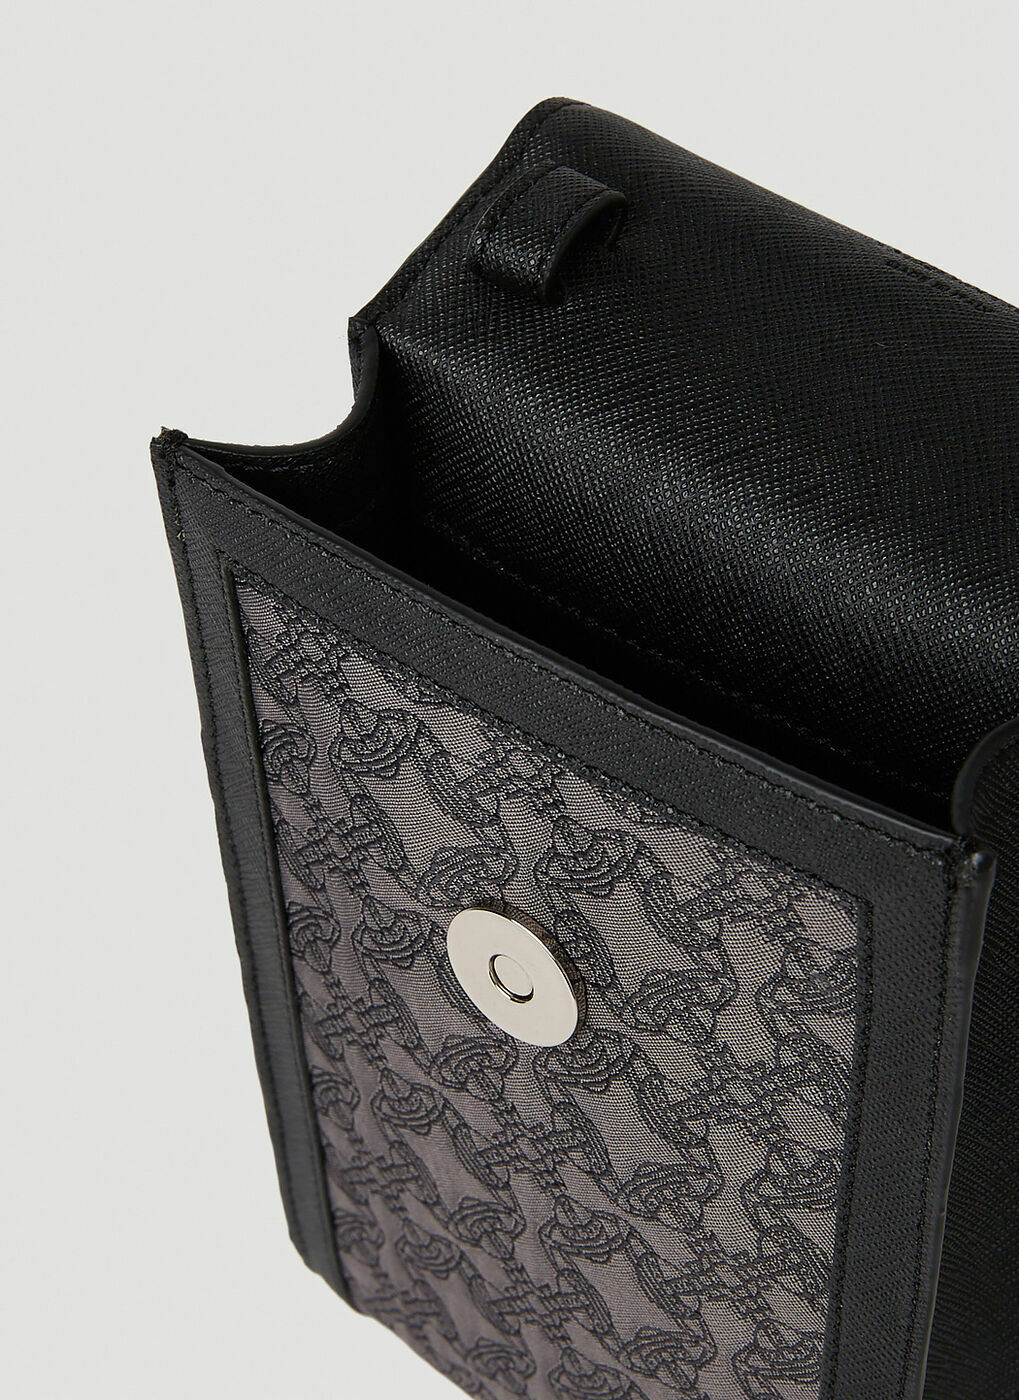 Re-Jacquard Orborama Phone Crossbody Bag in Black Vivienne Westwood